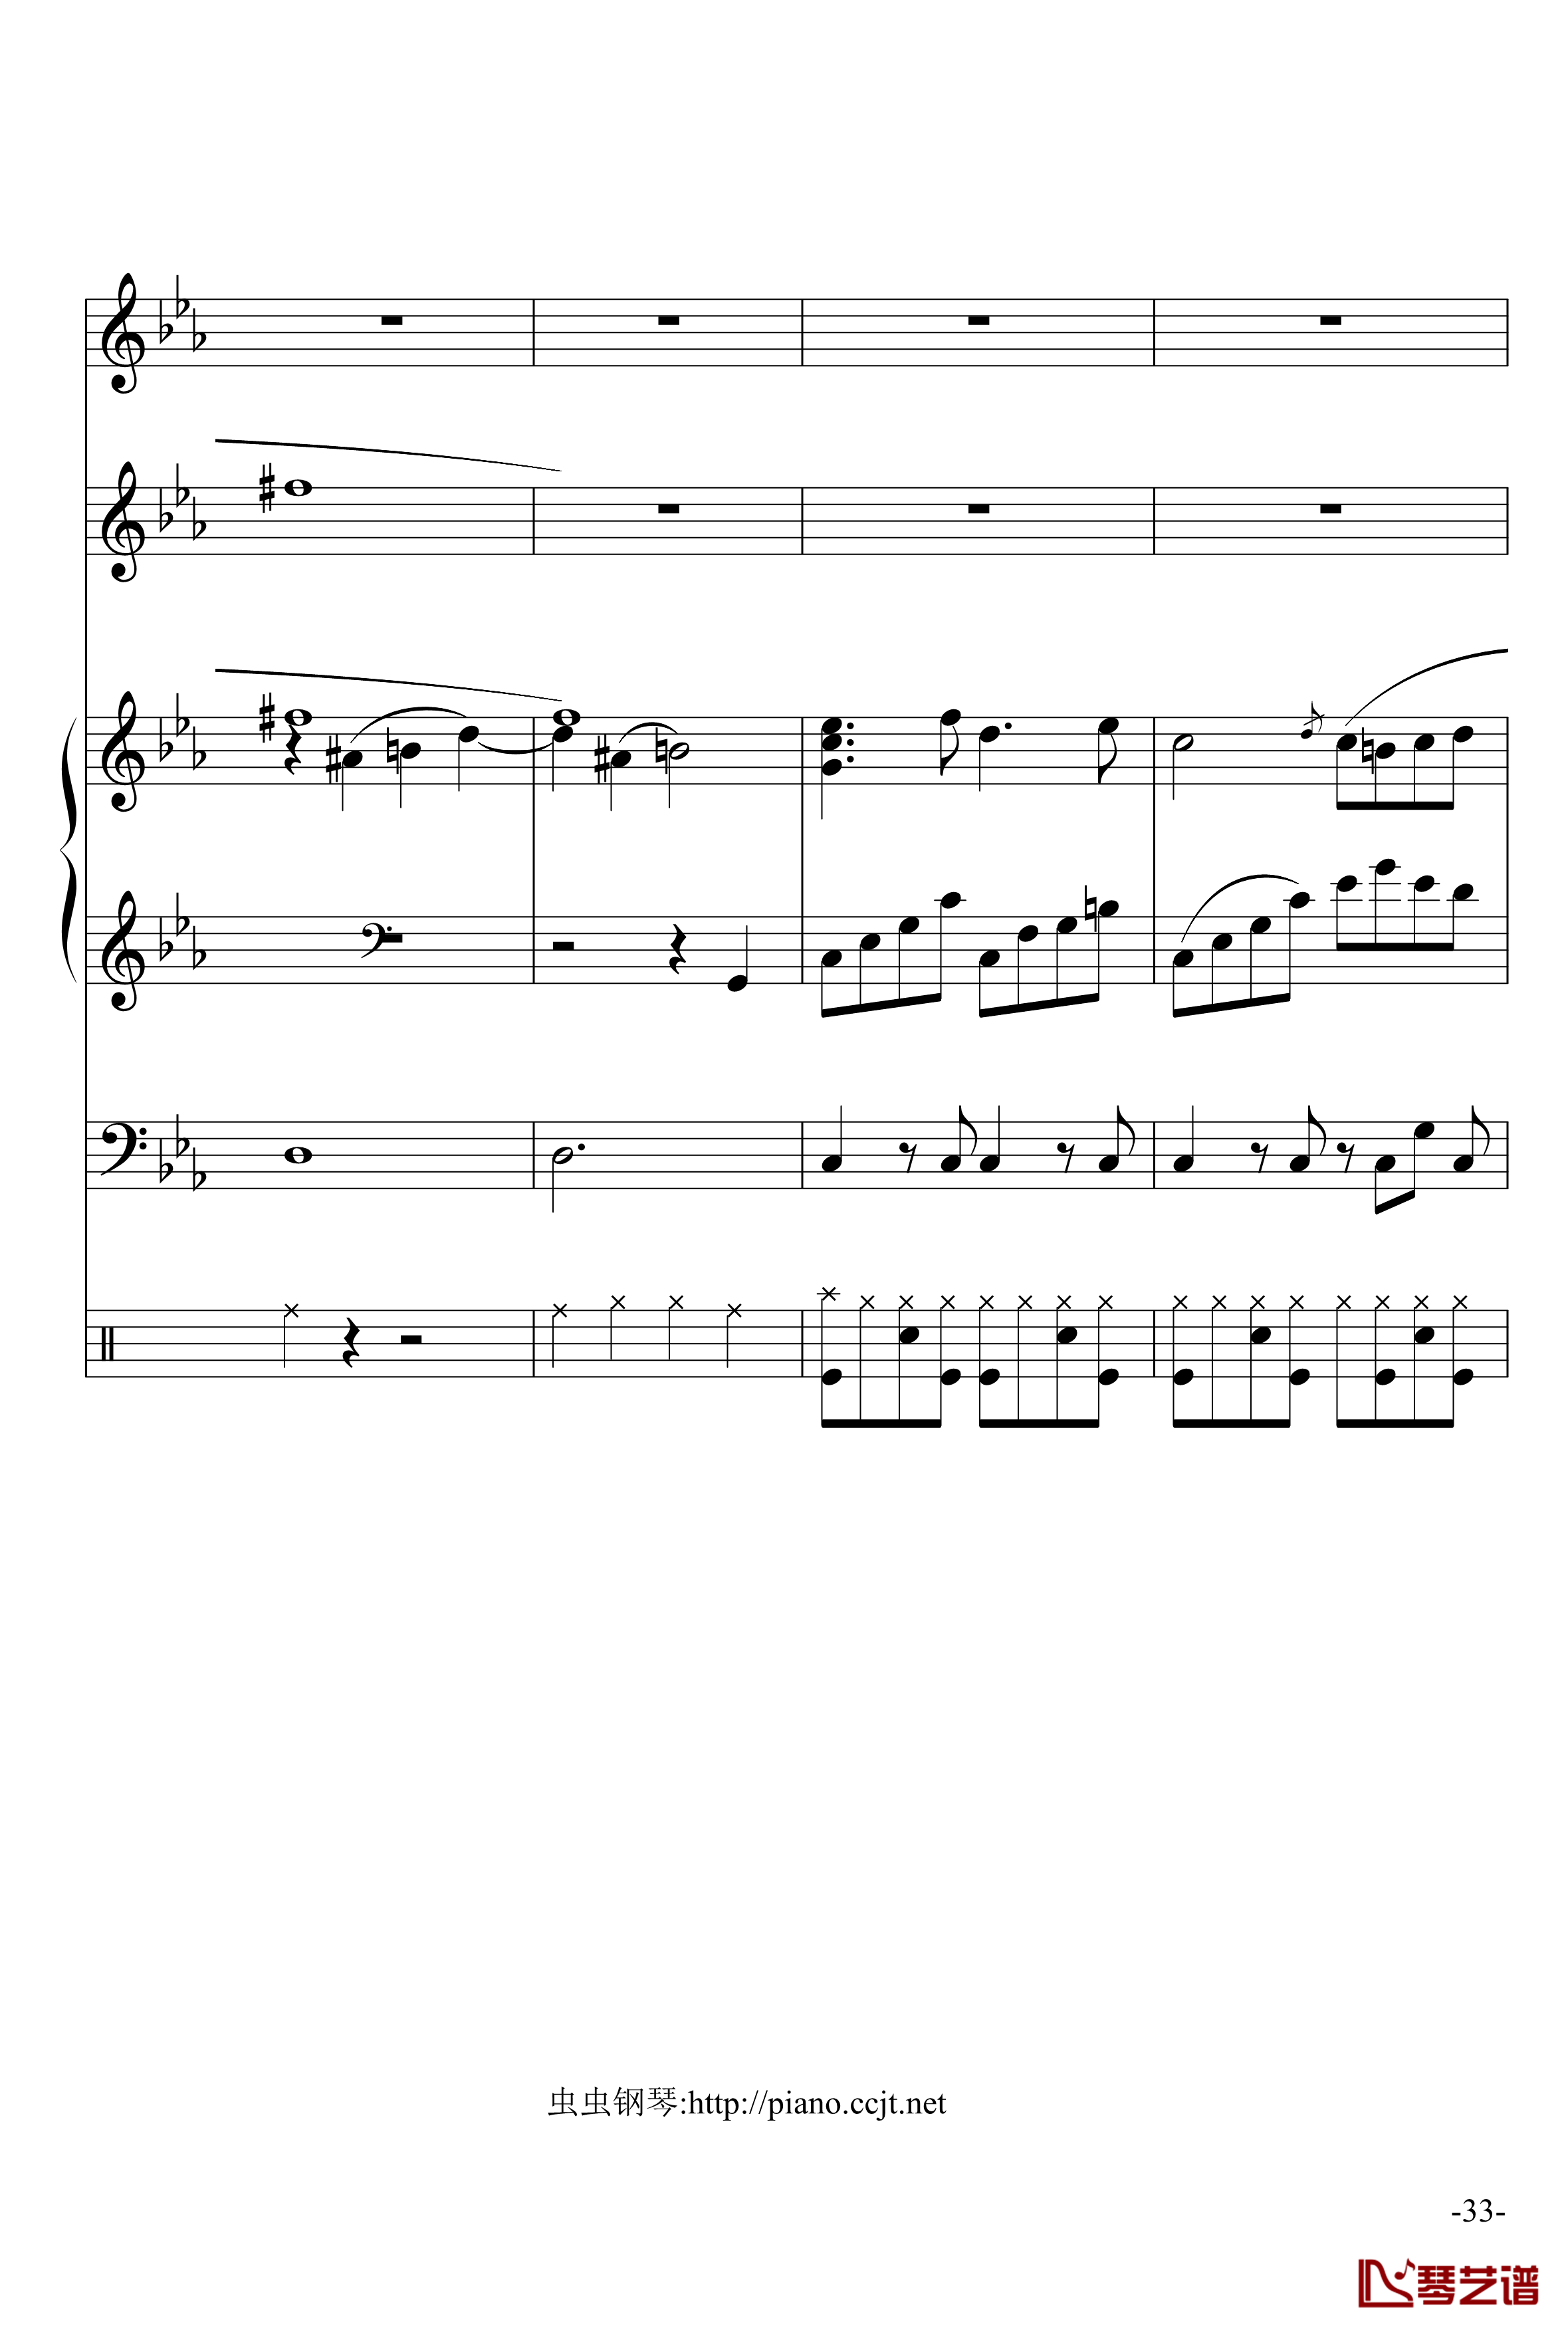 悲怆奏鸣曲钢琴谱-加小乐队-贝多芬-beethoven33